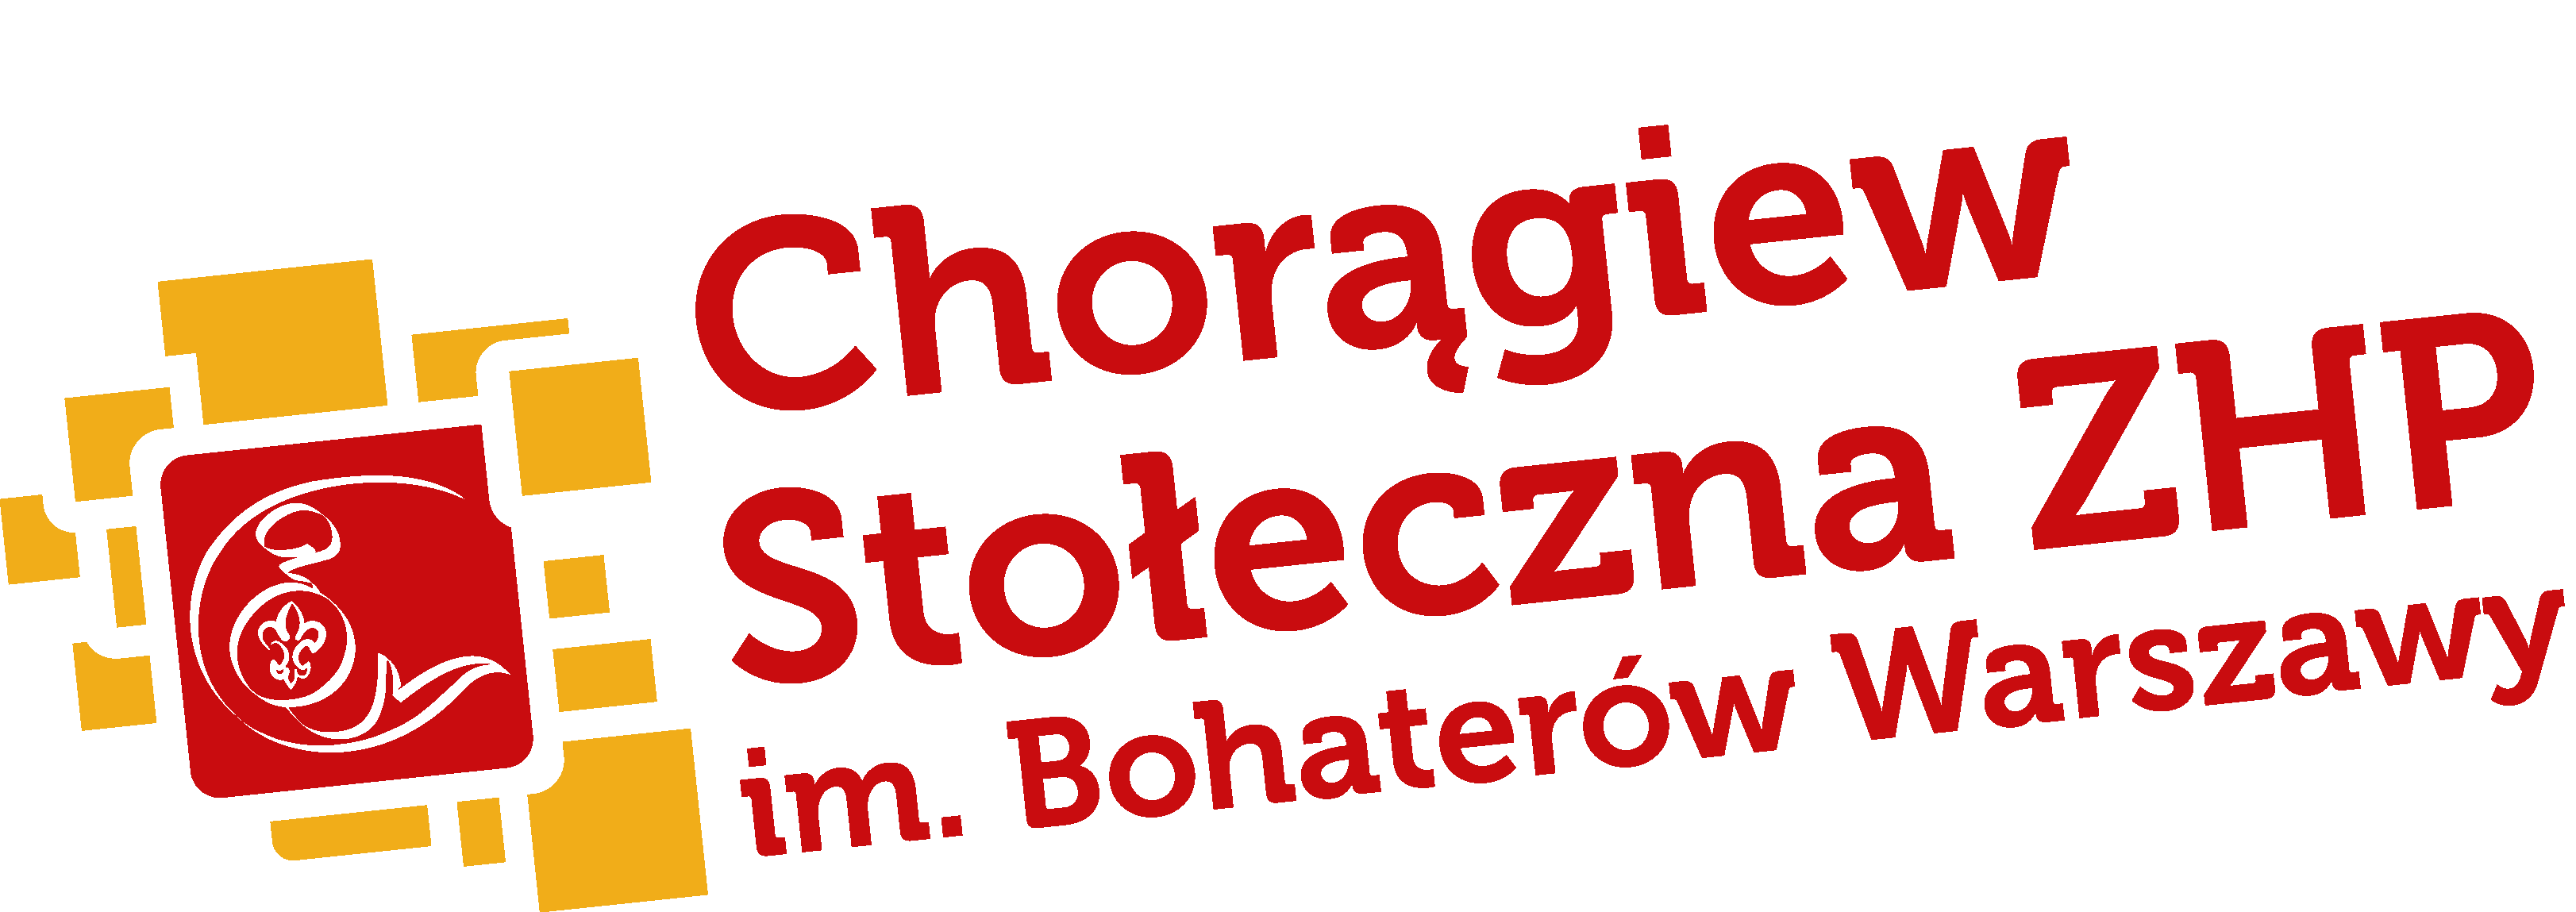 Związek Harcerstwa Polskiego Komendant Chorągwi Stołecznej ZHP im. Bohaterów Warszawy Warszawa, dn. 23 